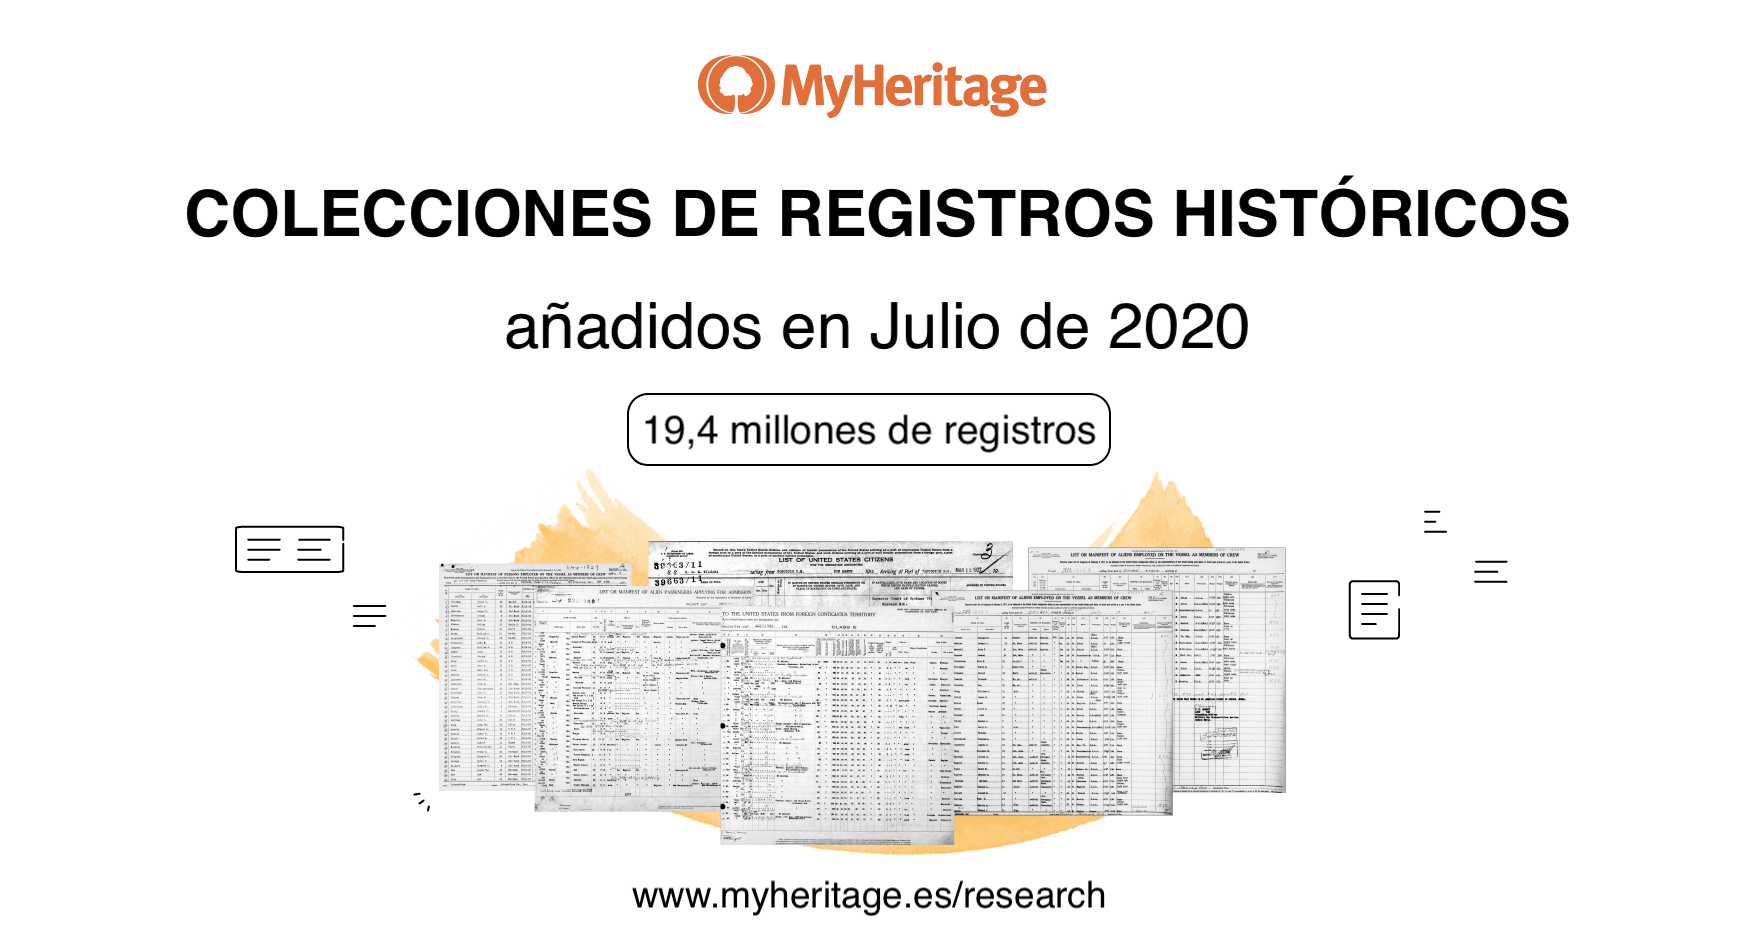 Colecciones de Registros Históricos Añadidas en Julio de 2020